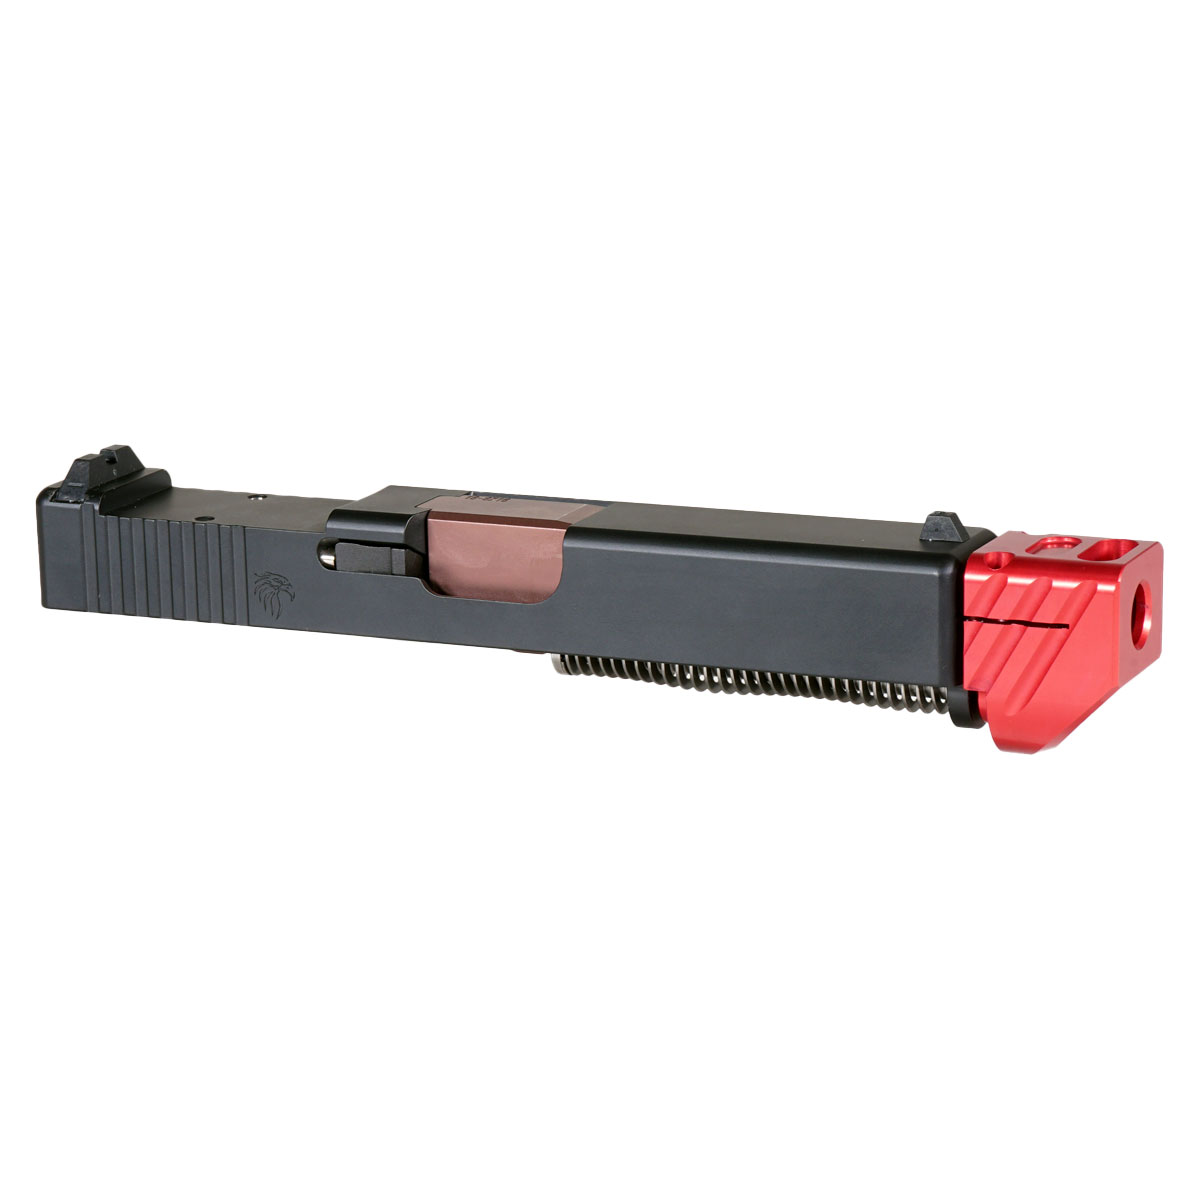 DD 'Blockbuster V3 w/ Red Compensator' 9mm Complete Slide Kit - Glock 19 Gen 1-3 Compatible